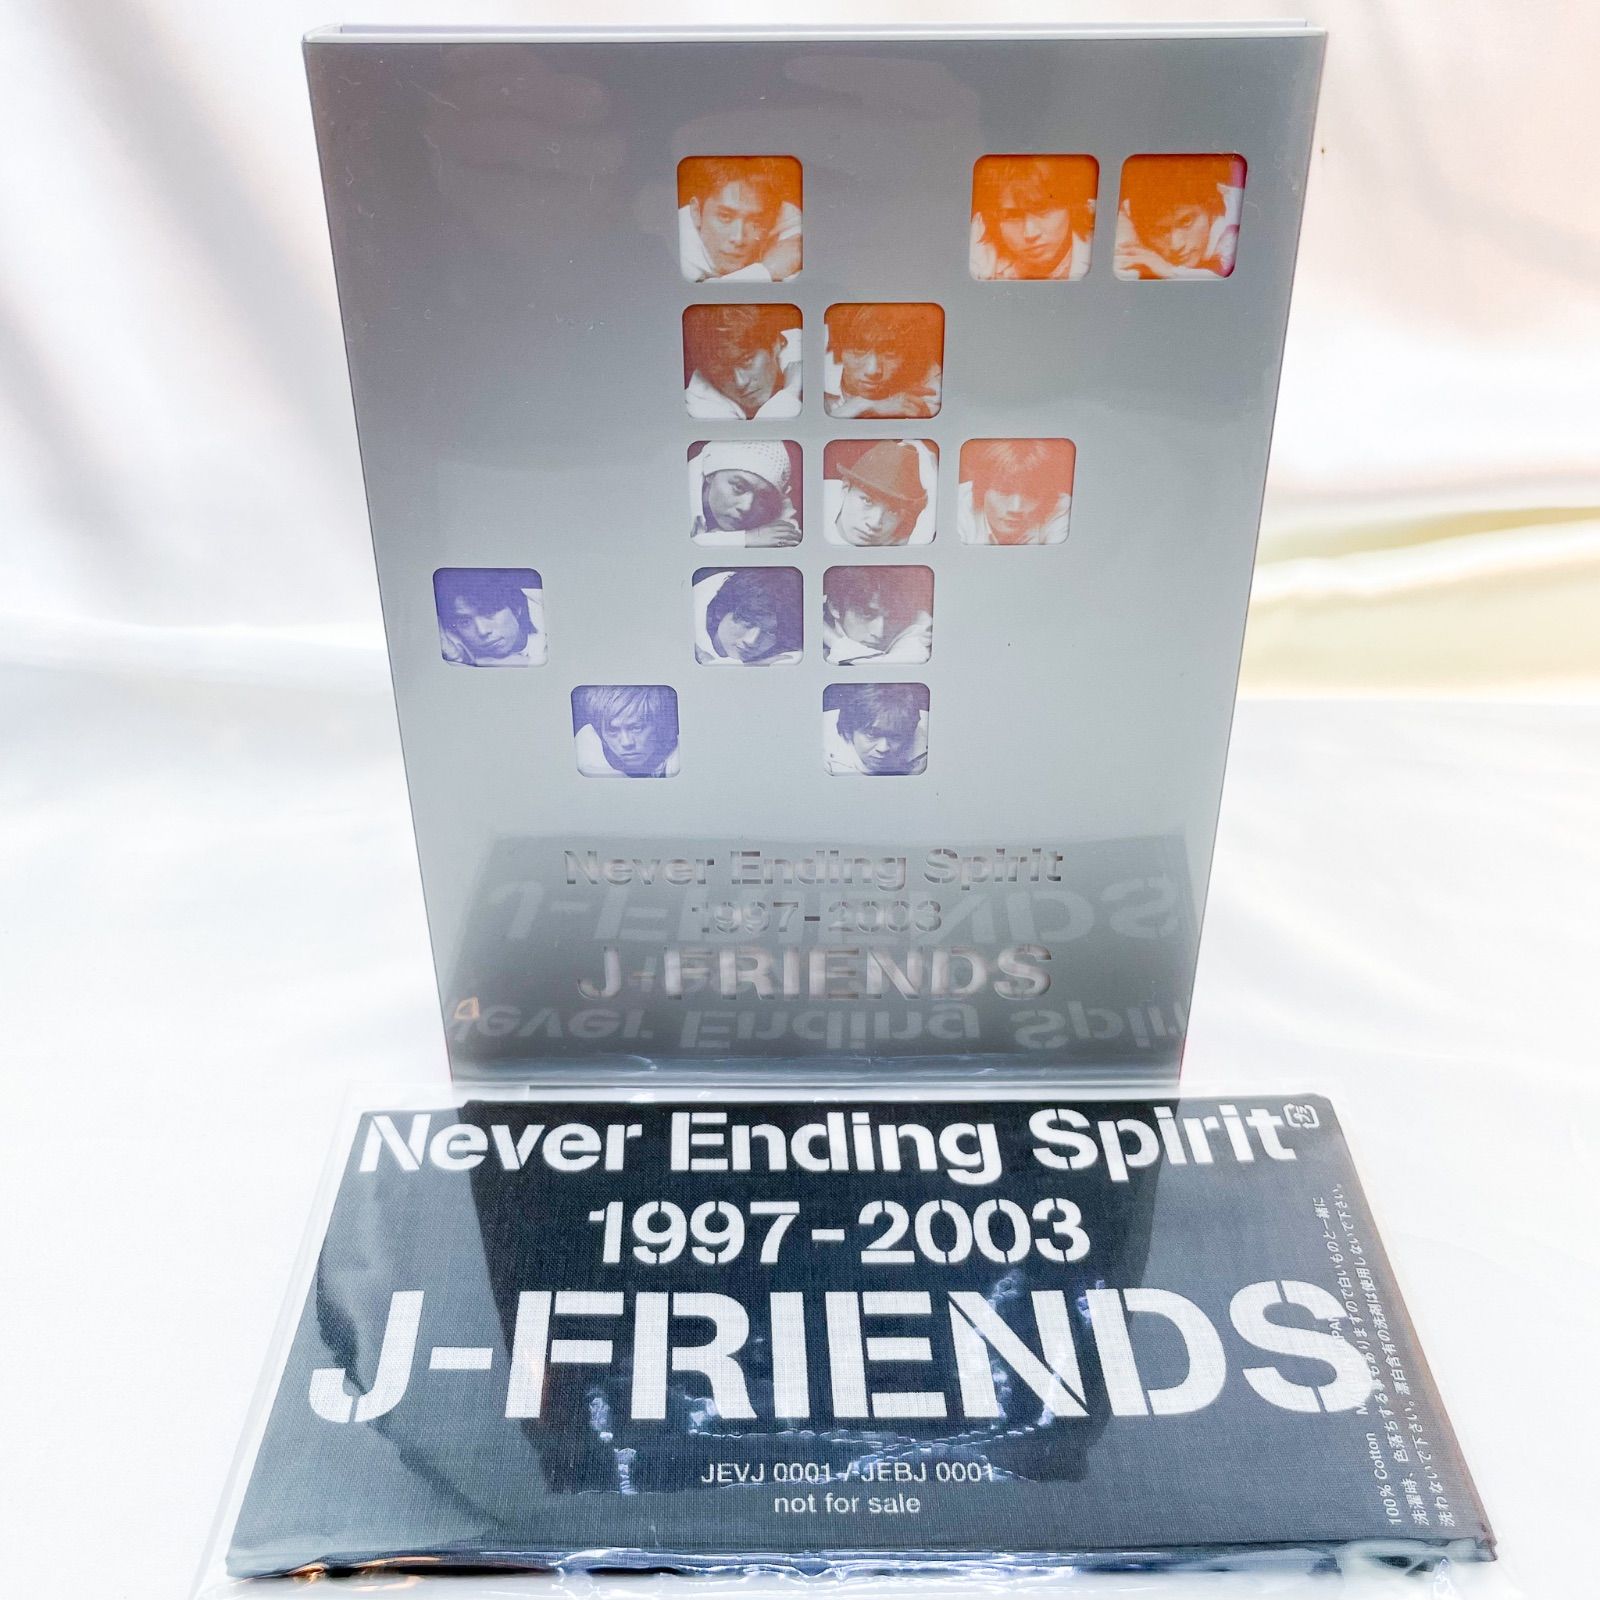 J-FRIENDS Never Ending Spirit 1997-2003 (A)